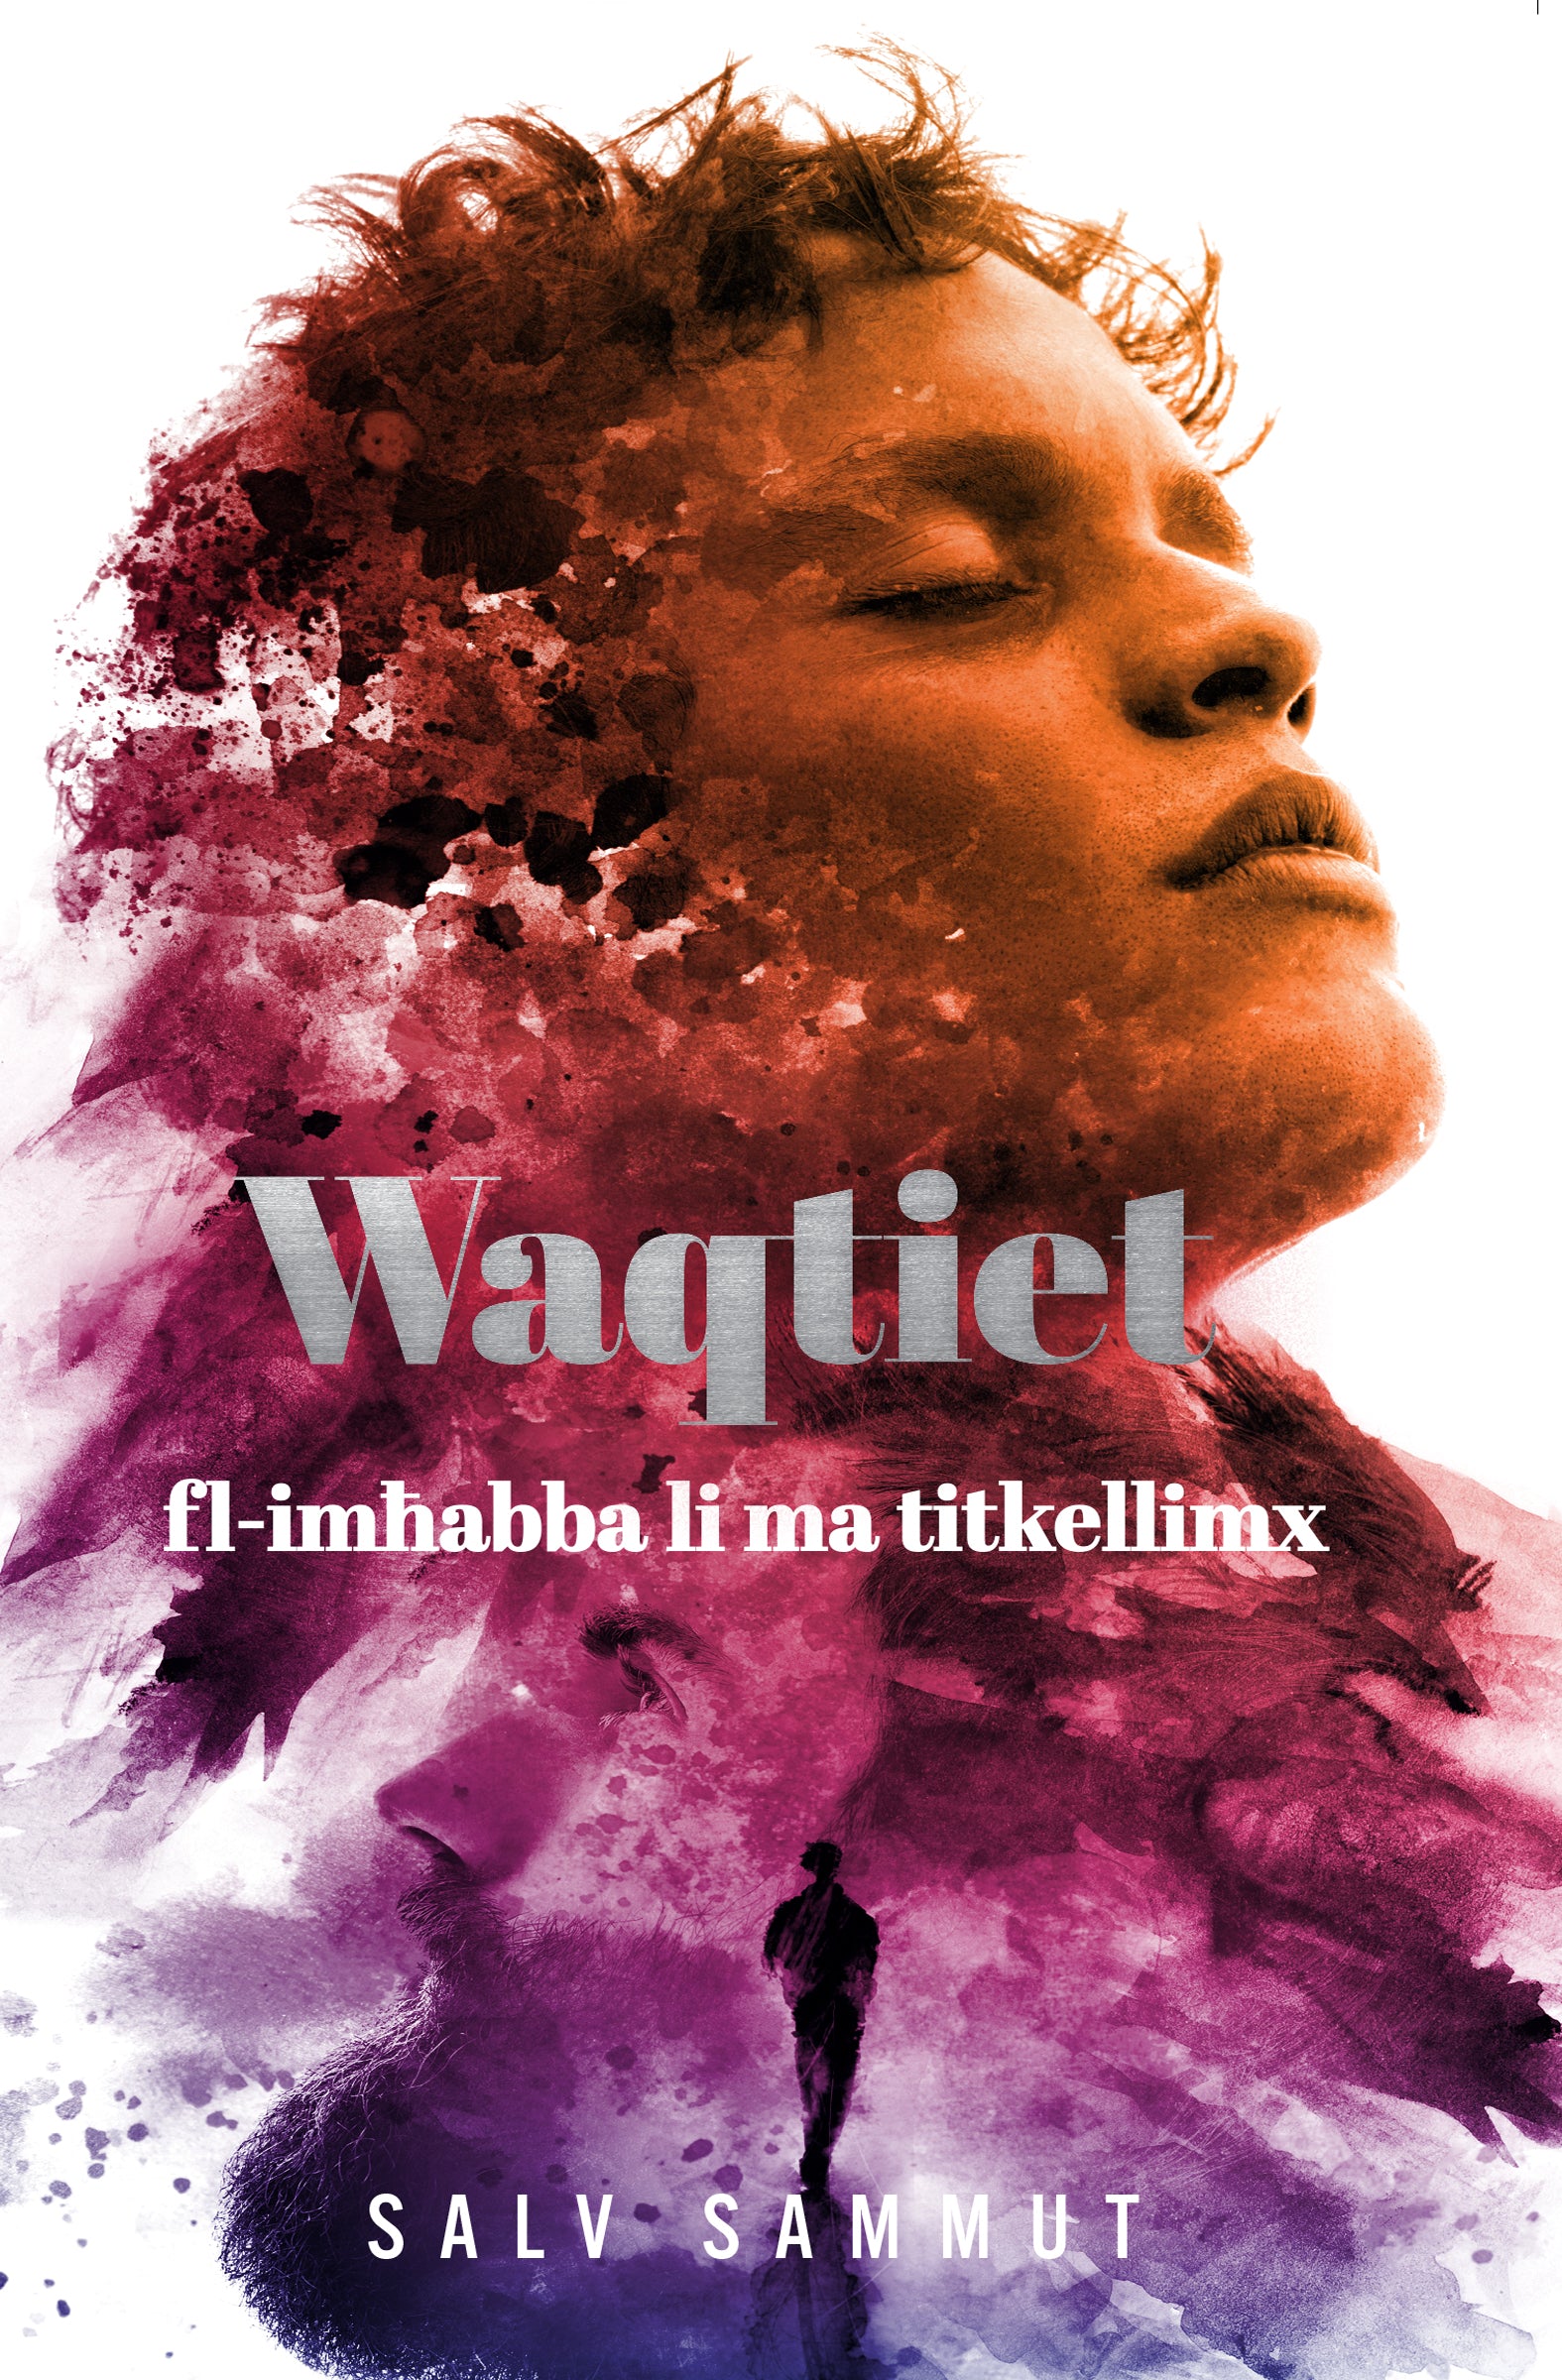 Waqtiet fl-imħabba li ma titkellimx - Agenda Bookshop